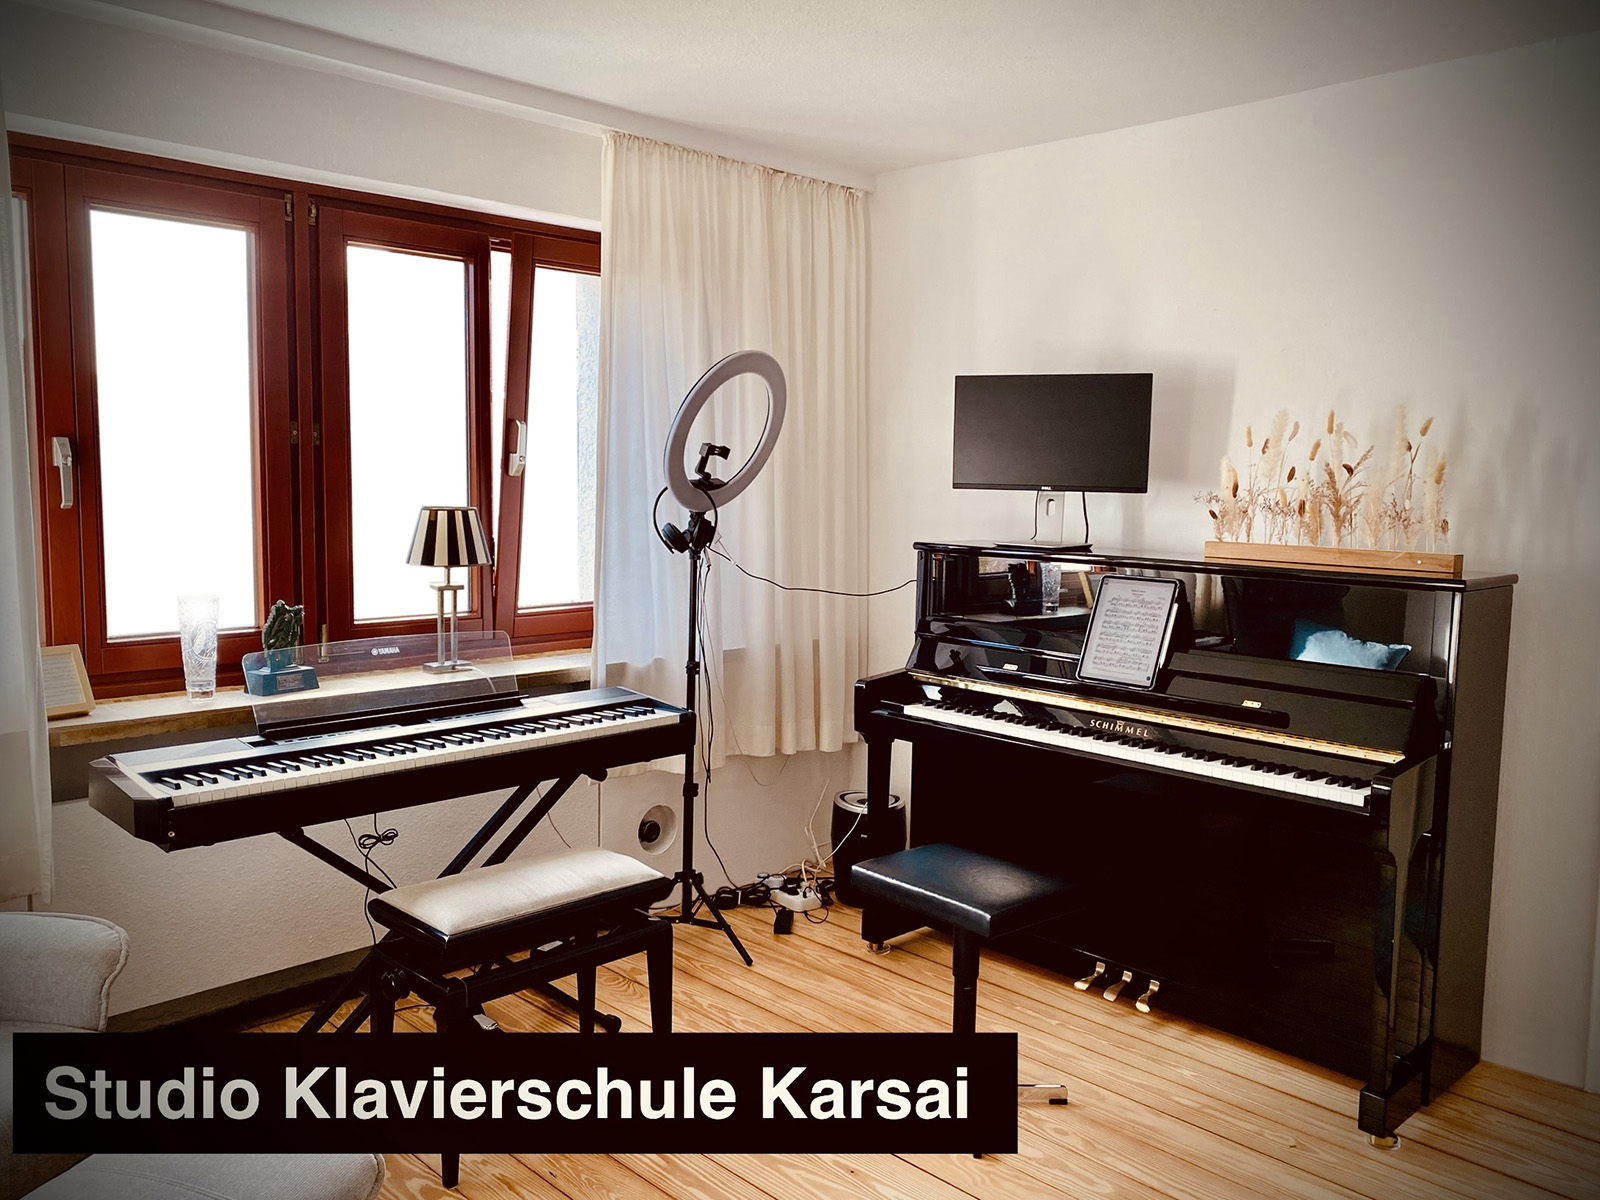 Studio Klavierschule Karsai